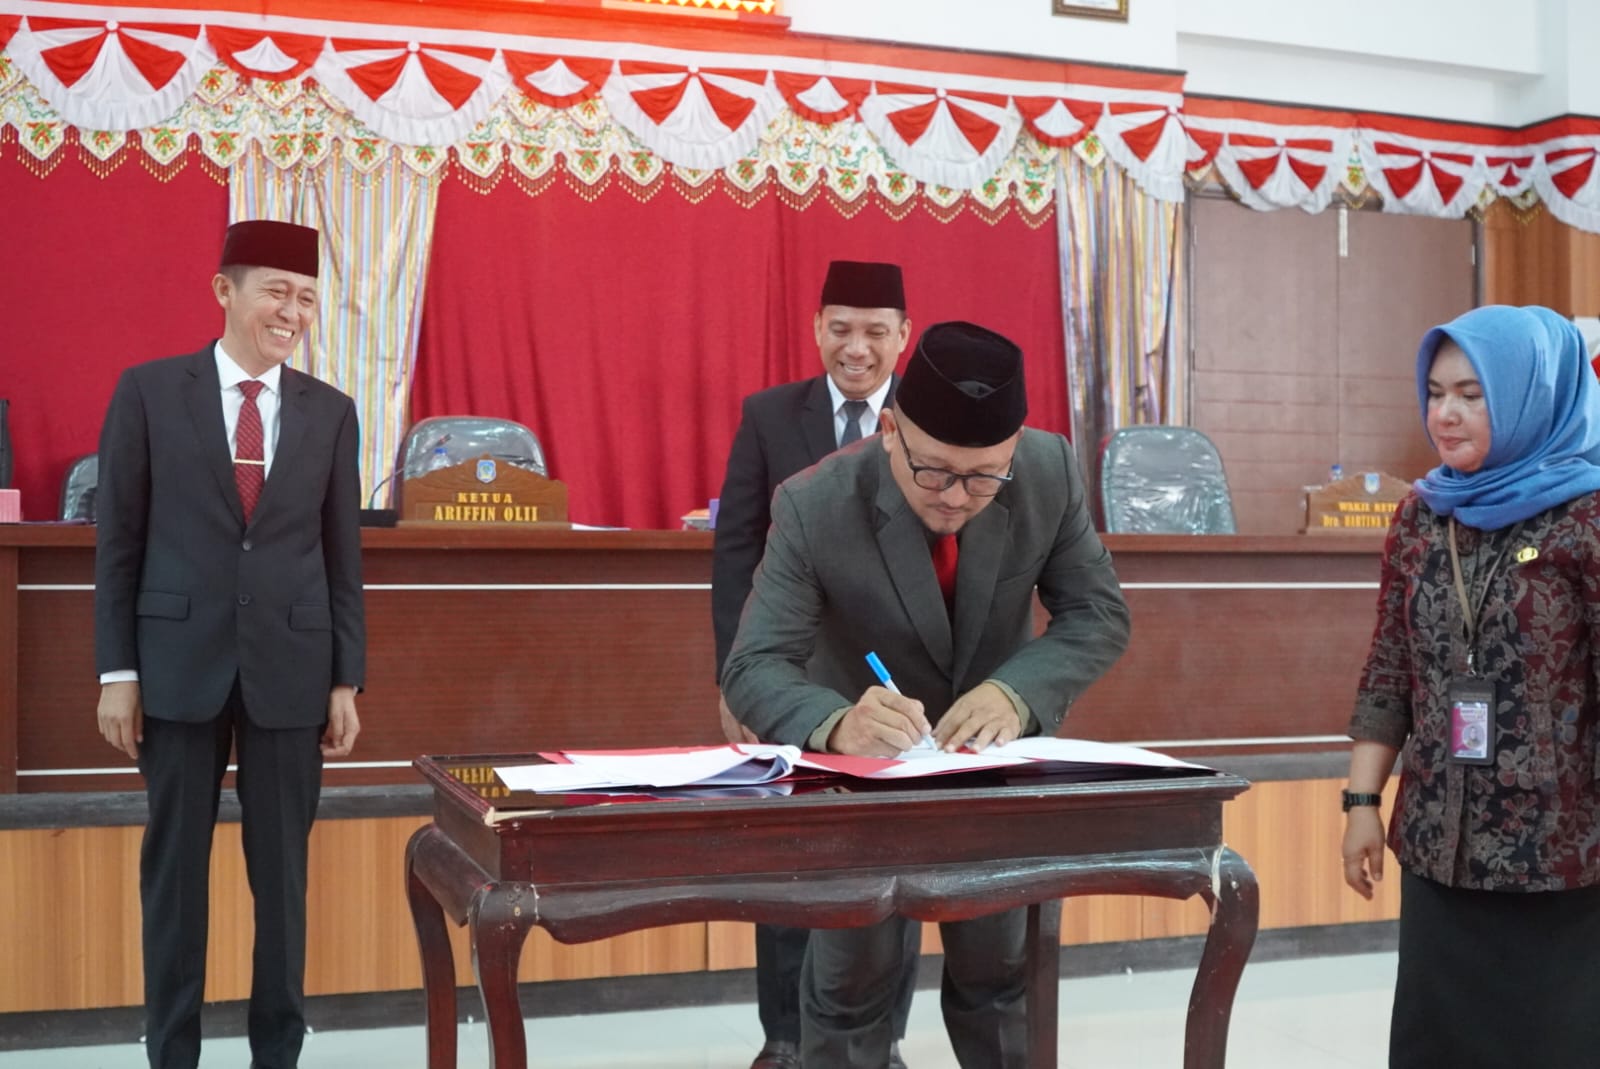 Ketua DPRD Ir Arifin Olii menandatangani berita acara ditetapkannya Dua Perda.